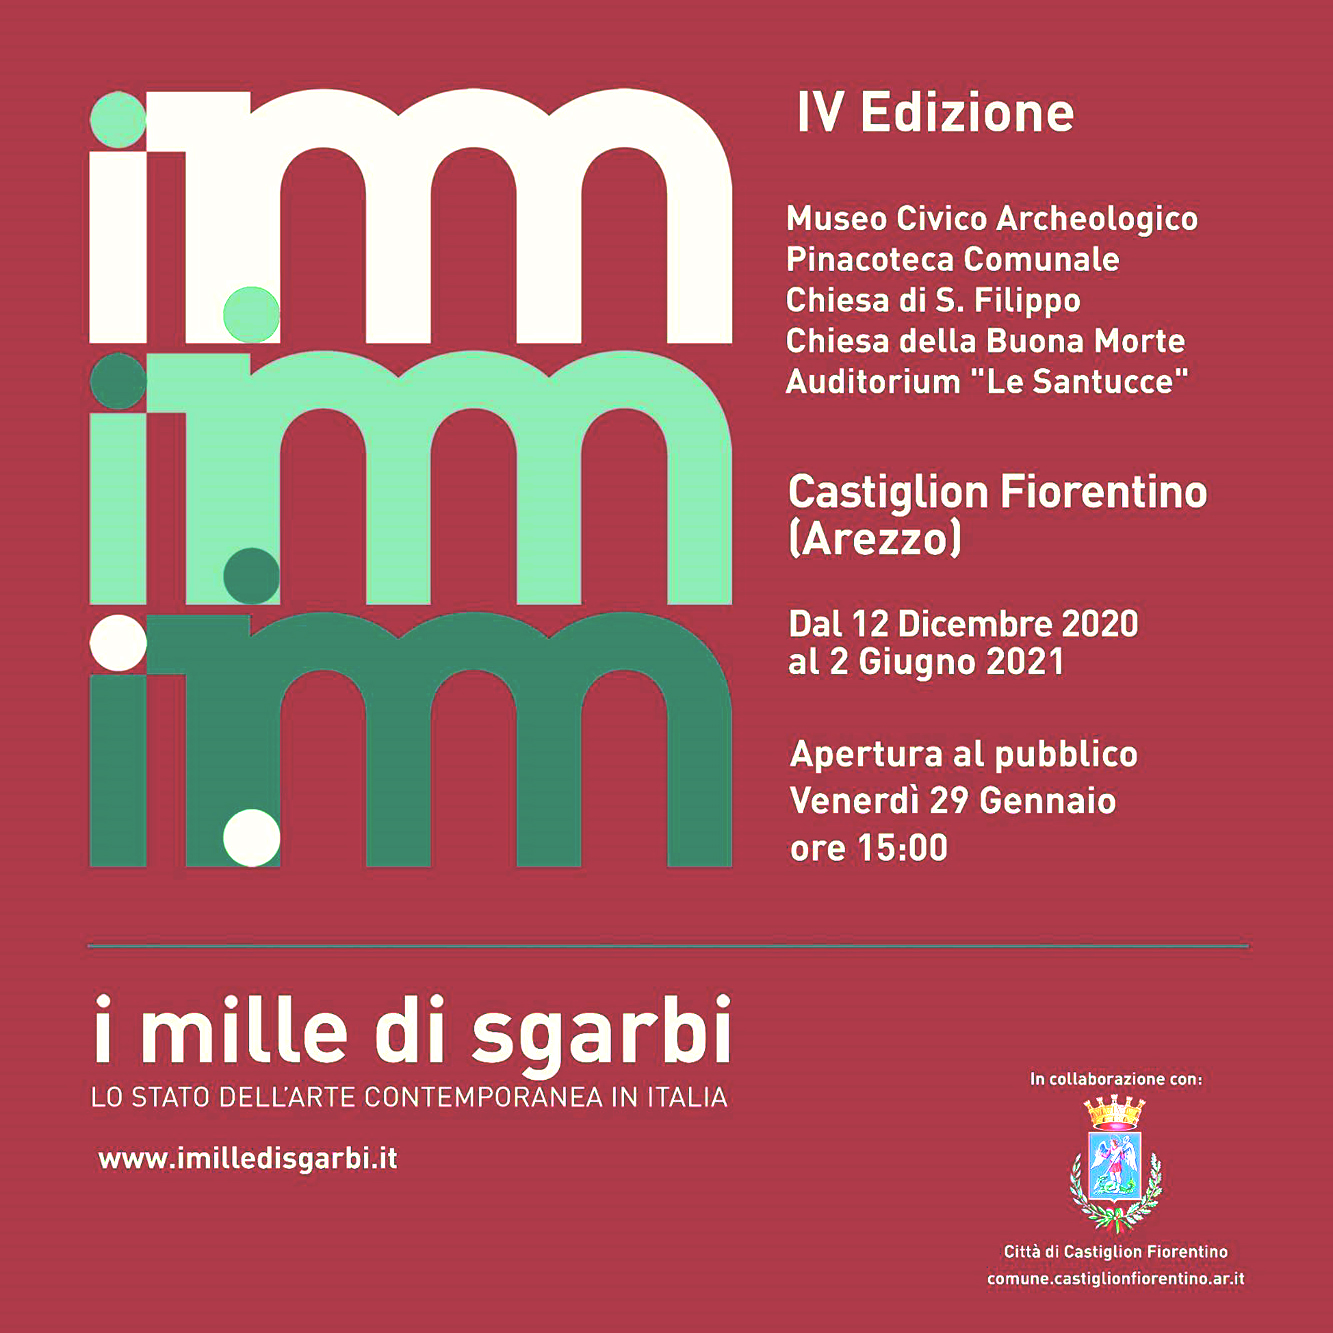 2021 - 'I Mille di Sgarbi IV Edizione', Gladys Sica, Locandina, Castiglion Fiorentino